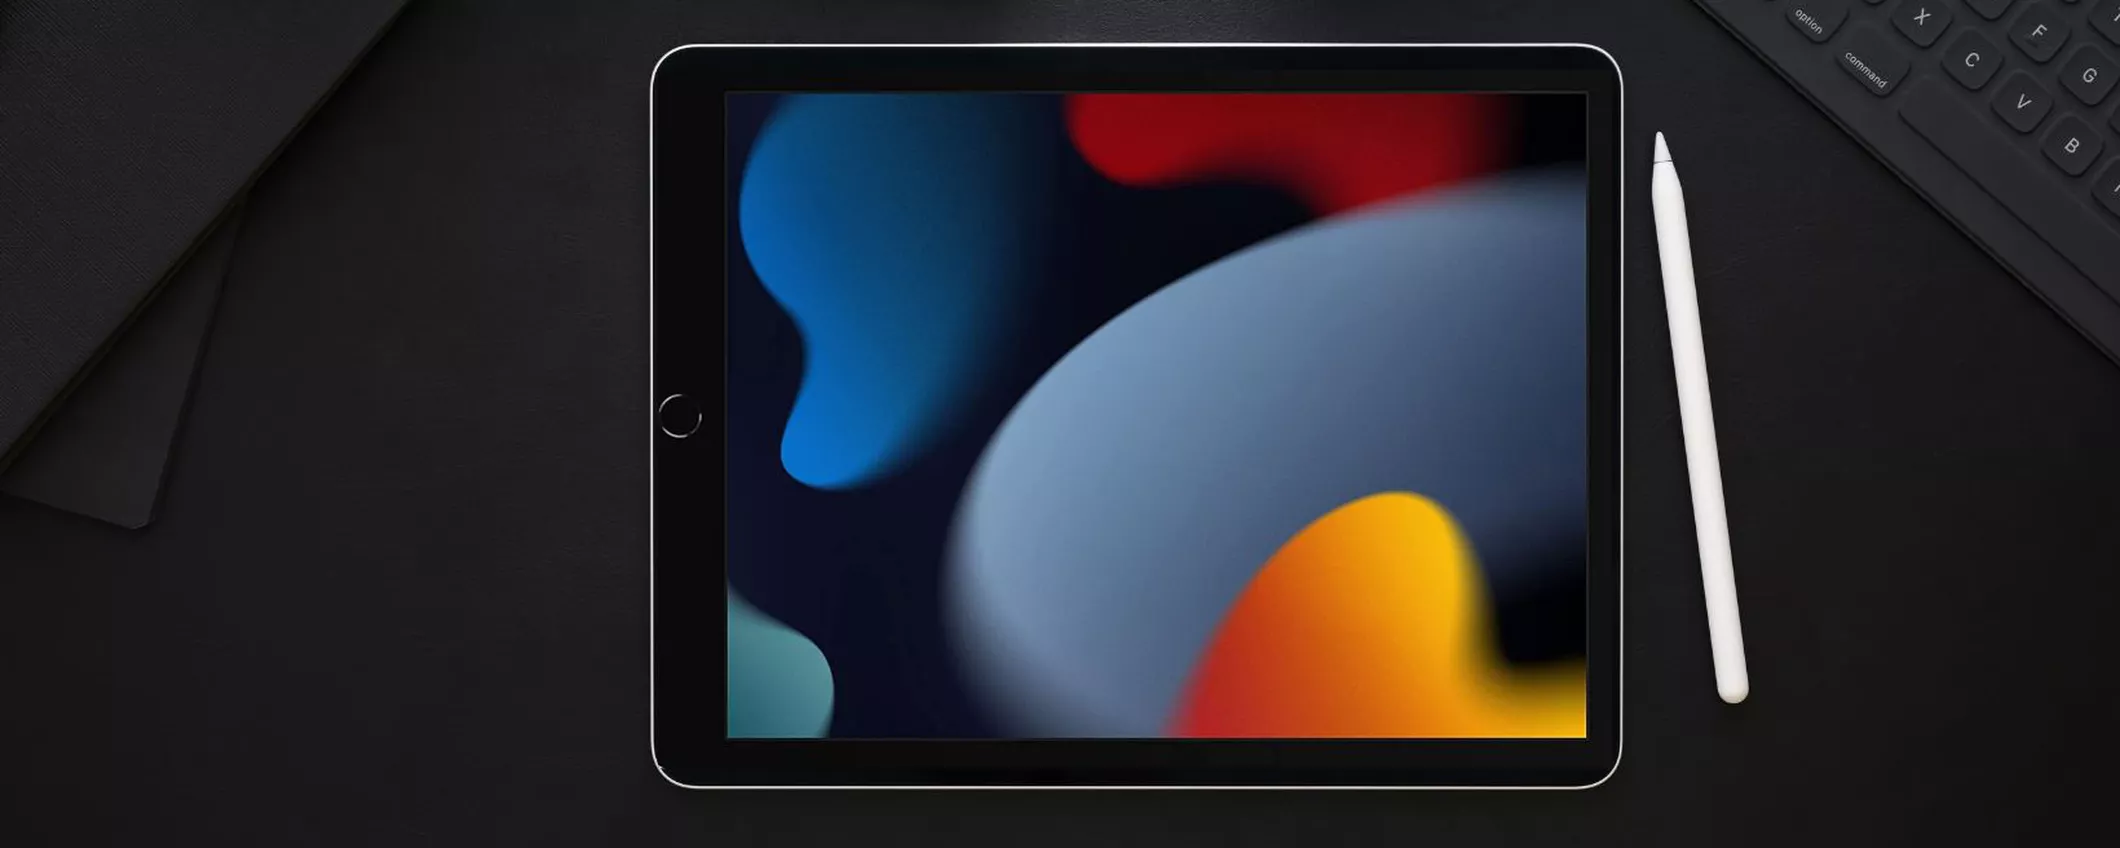 Sconto imperdibile sull'Apple iPad 9: approfitta dell'offerta esclusiva su Amazon